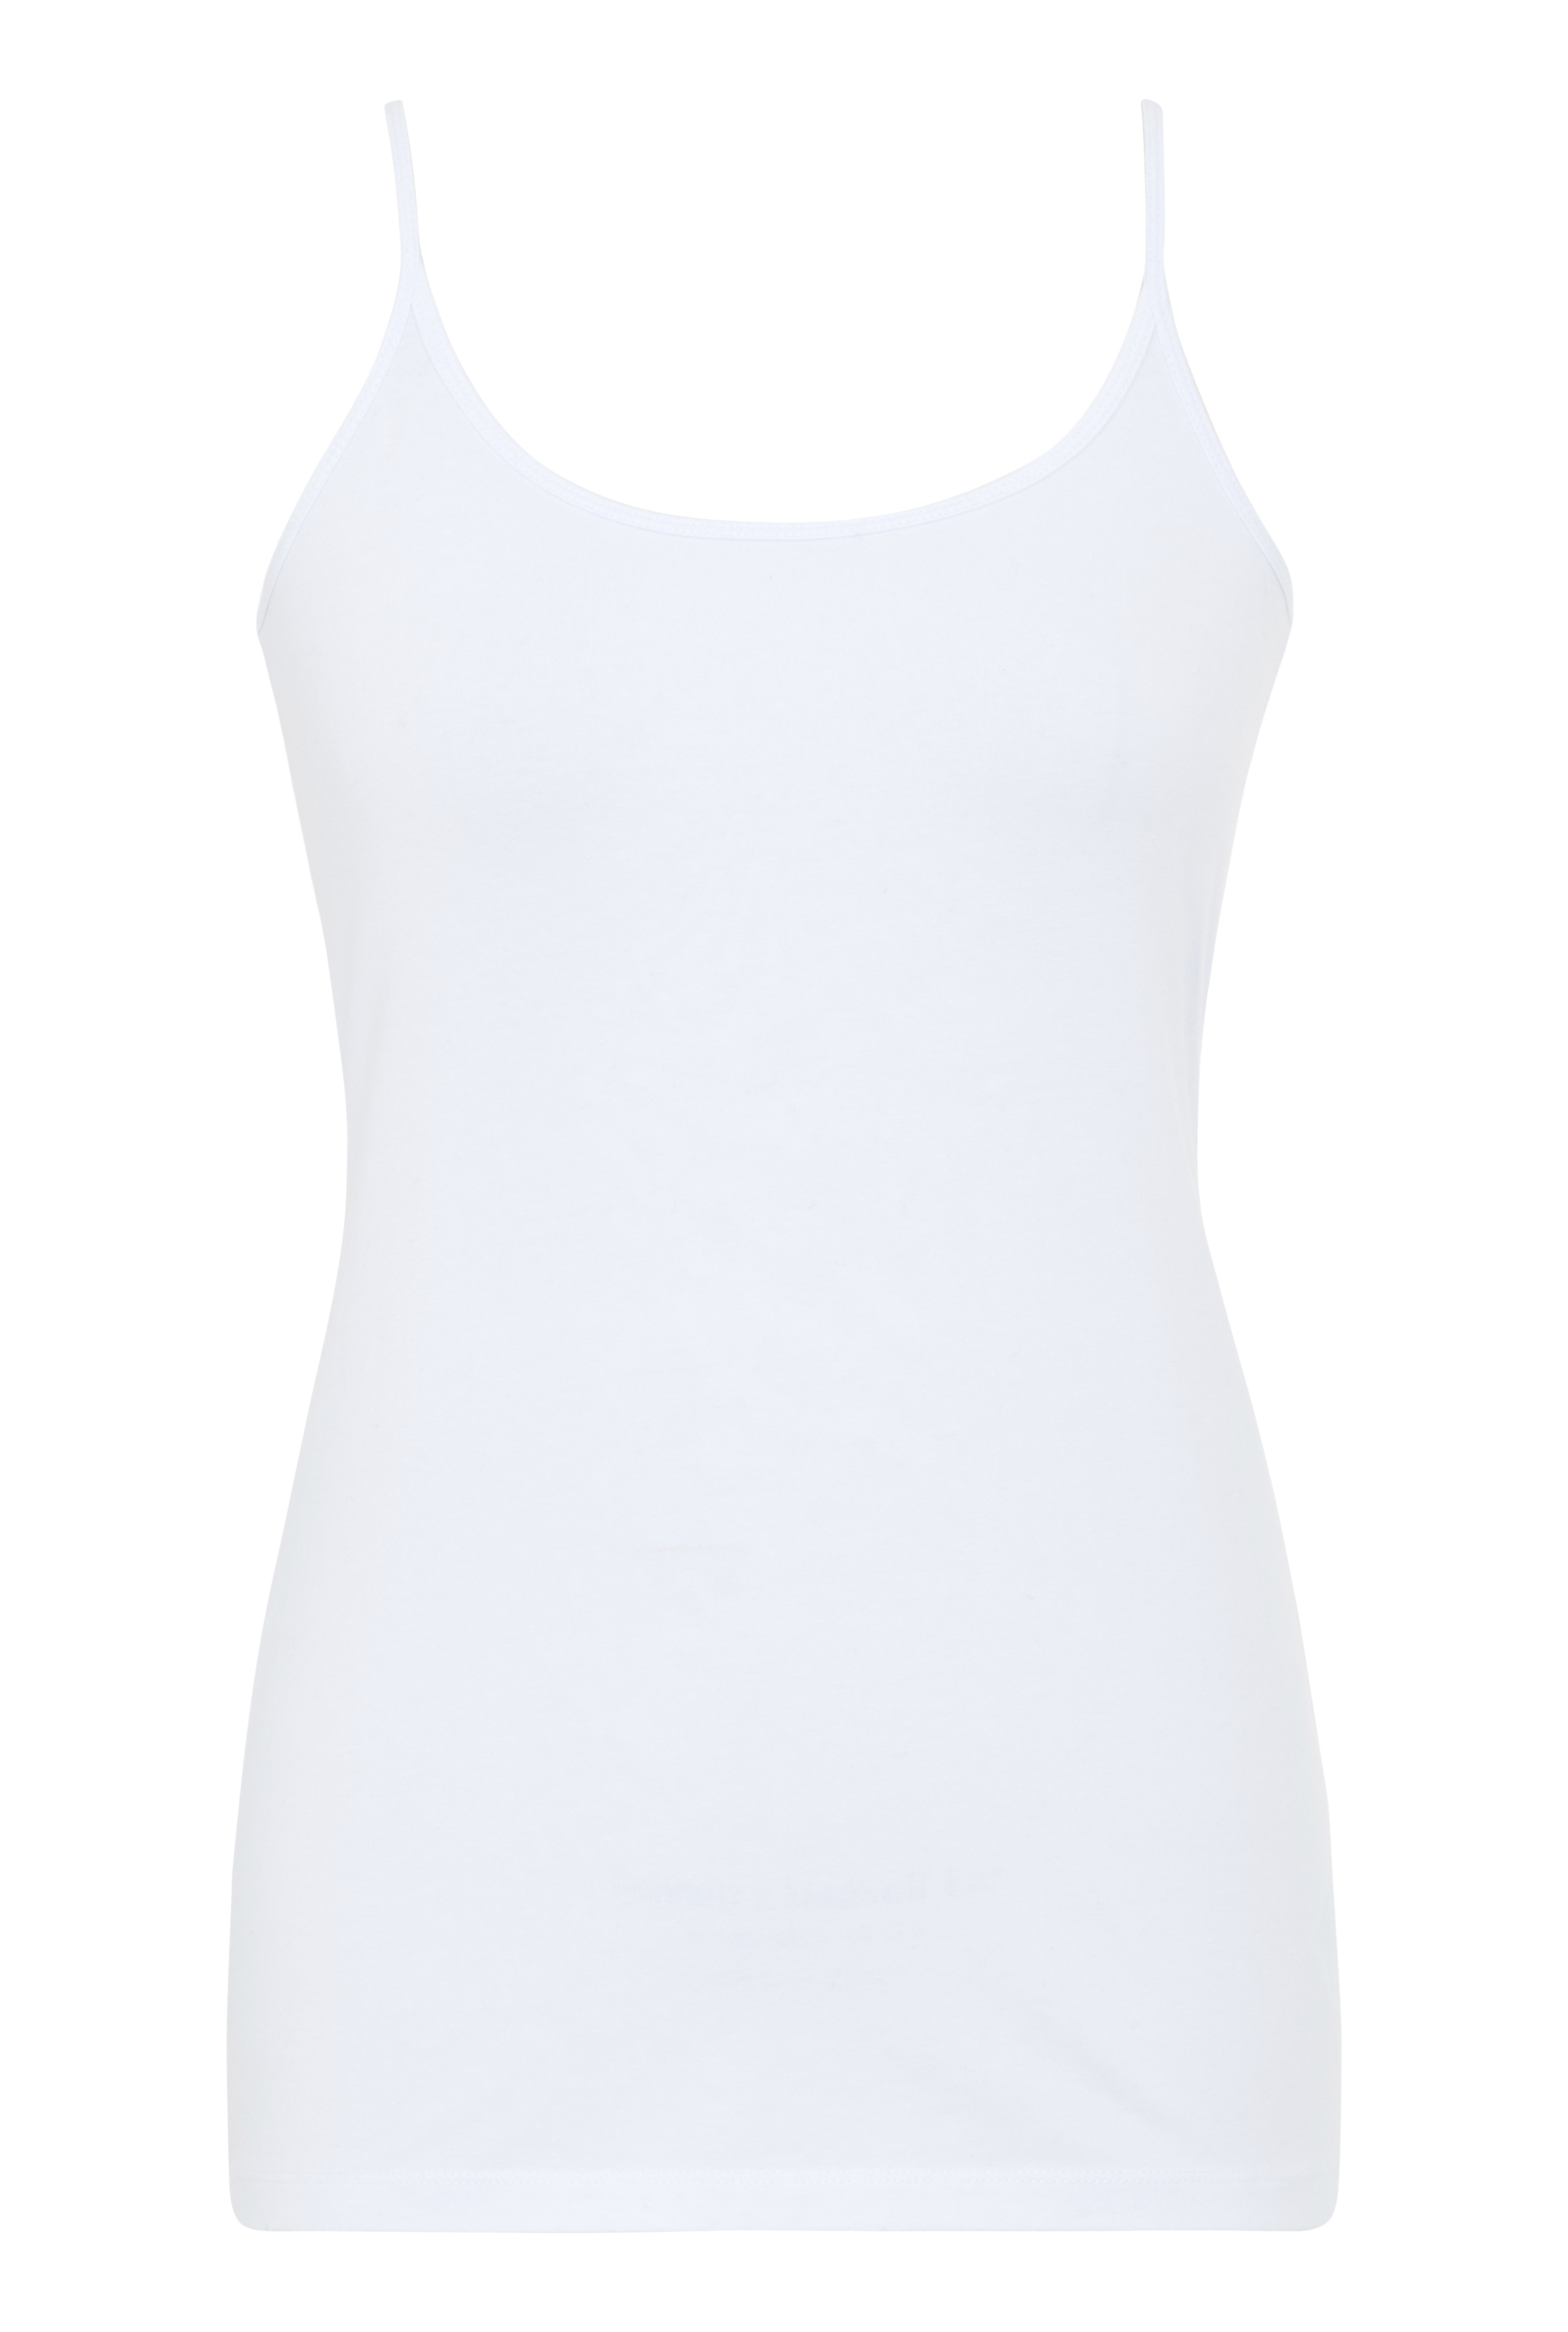 White Cotton Cami Top | Long Tall Sally